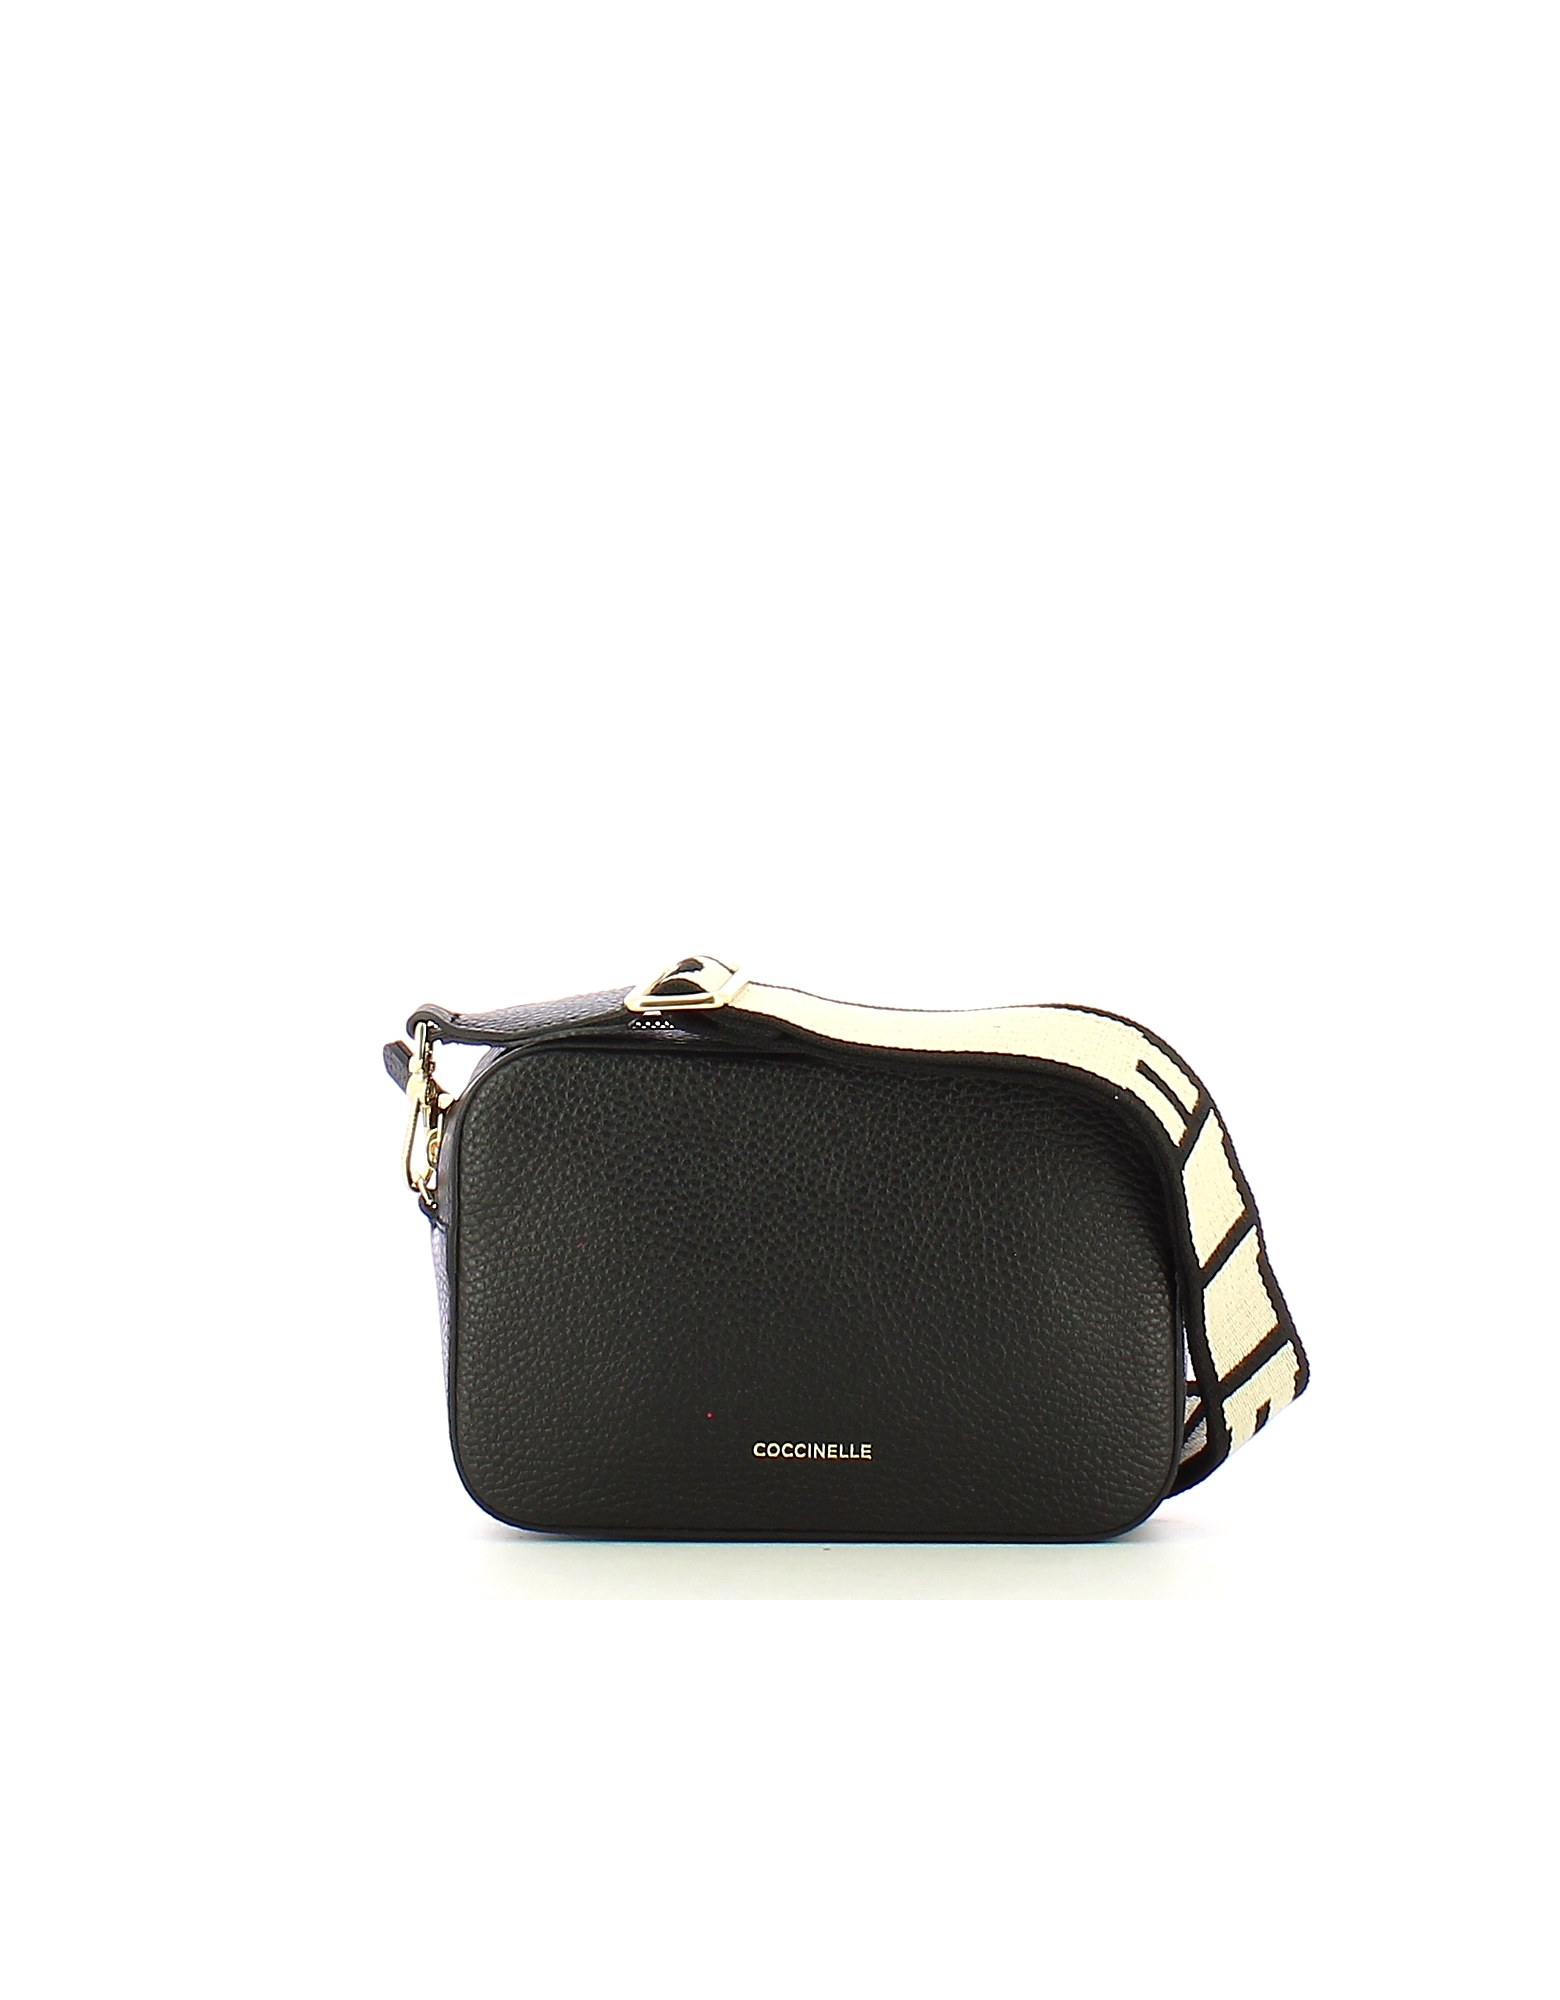 Coccinelle Designer Handbags Women's Black Mini Bag In Noir